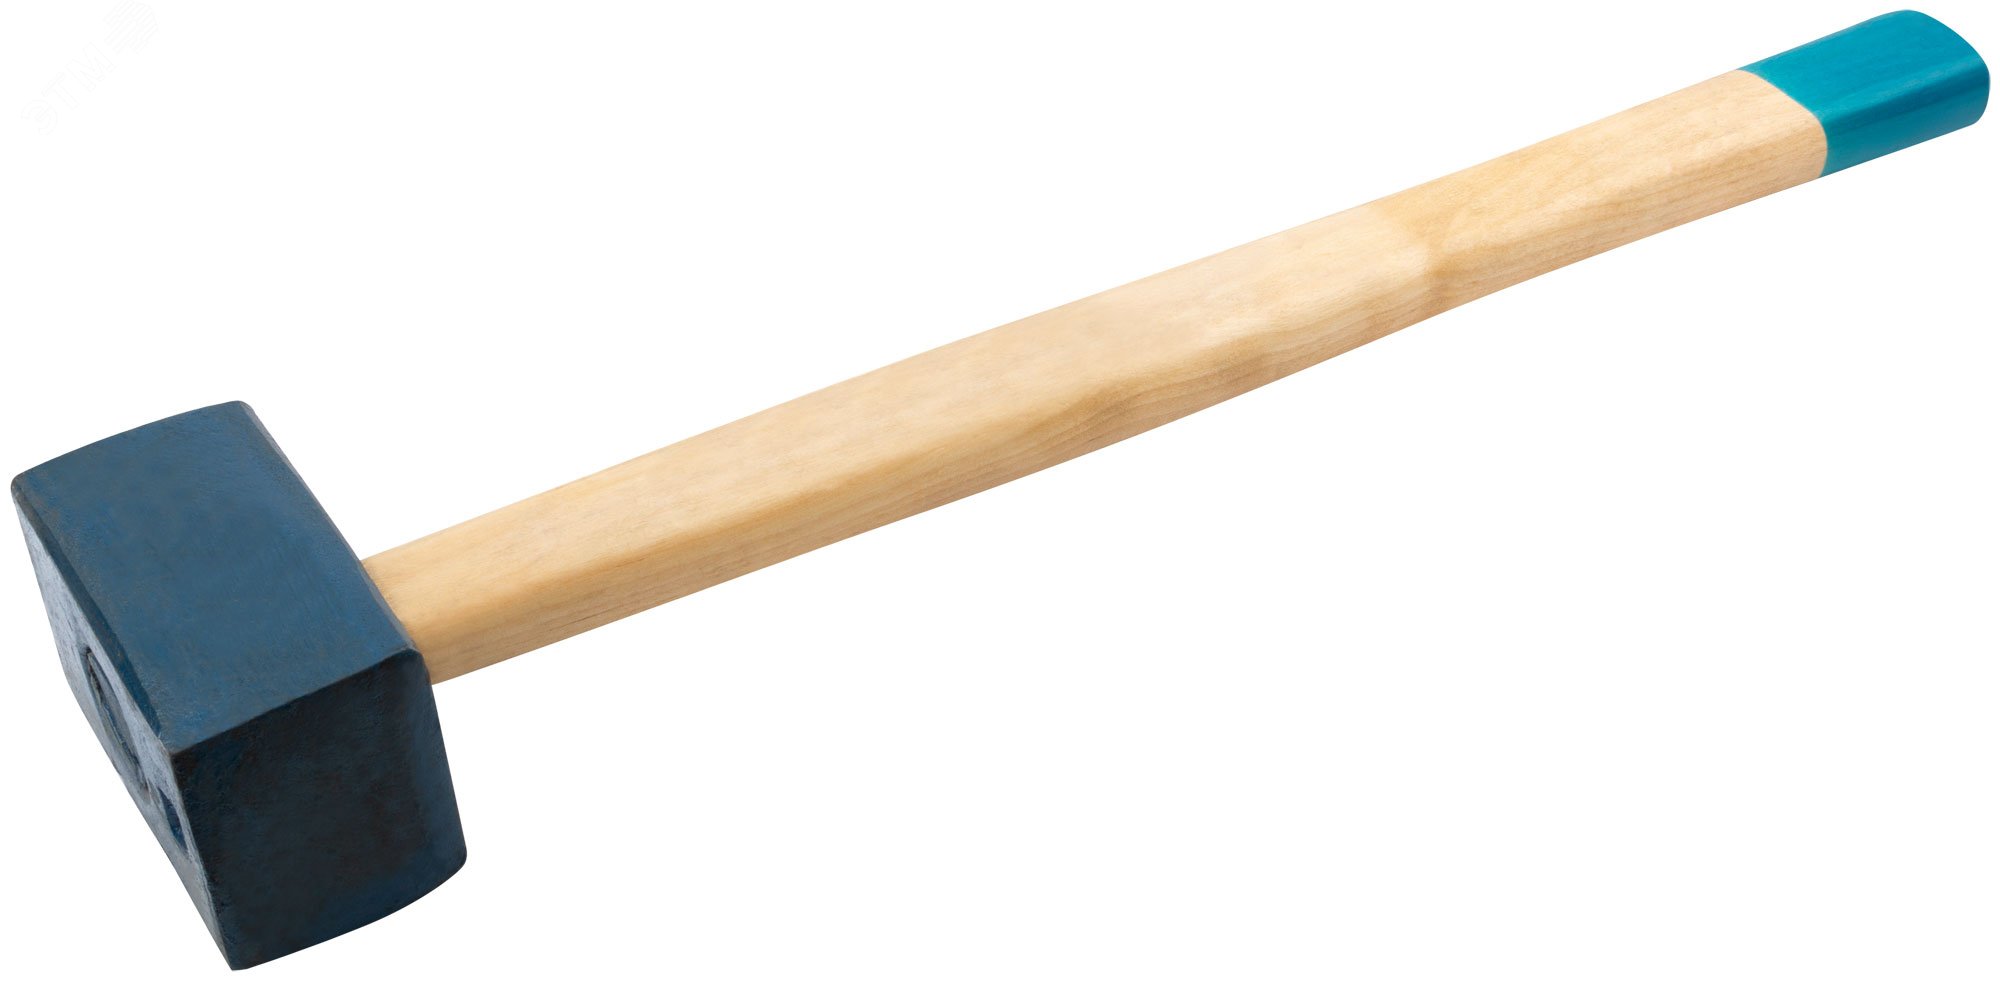 Кувалда кованая в сборе, деревянная эргономичная ручка 5.5 кг 45035 РОС - превью 2